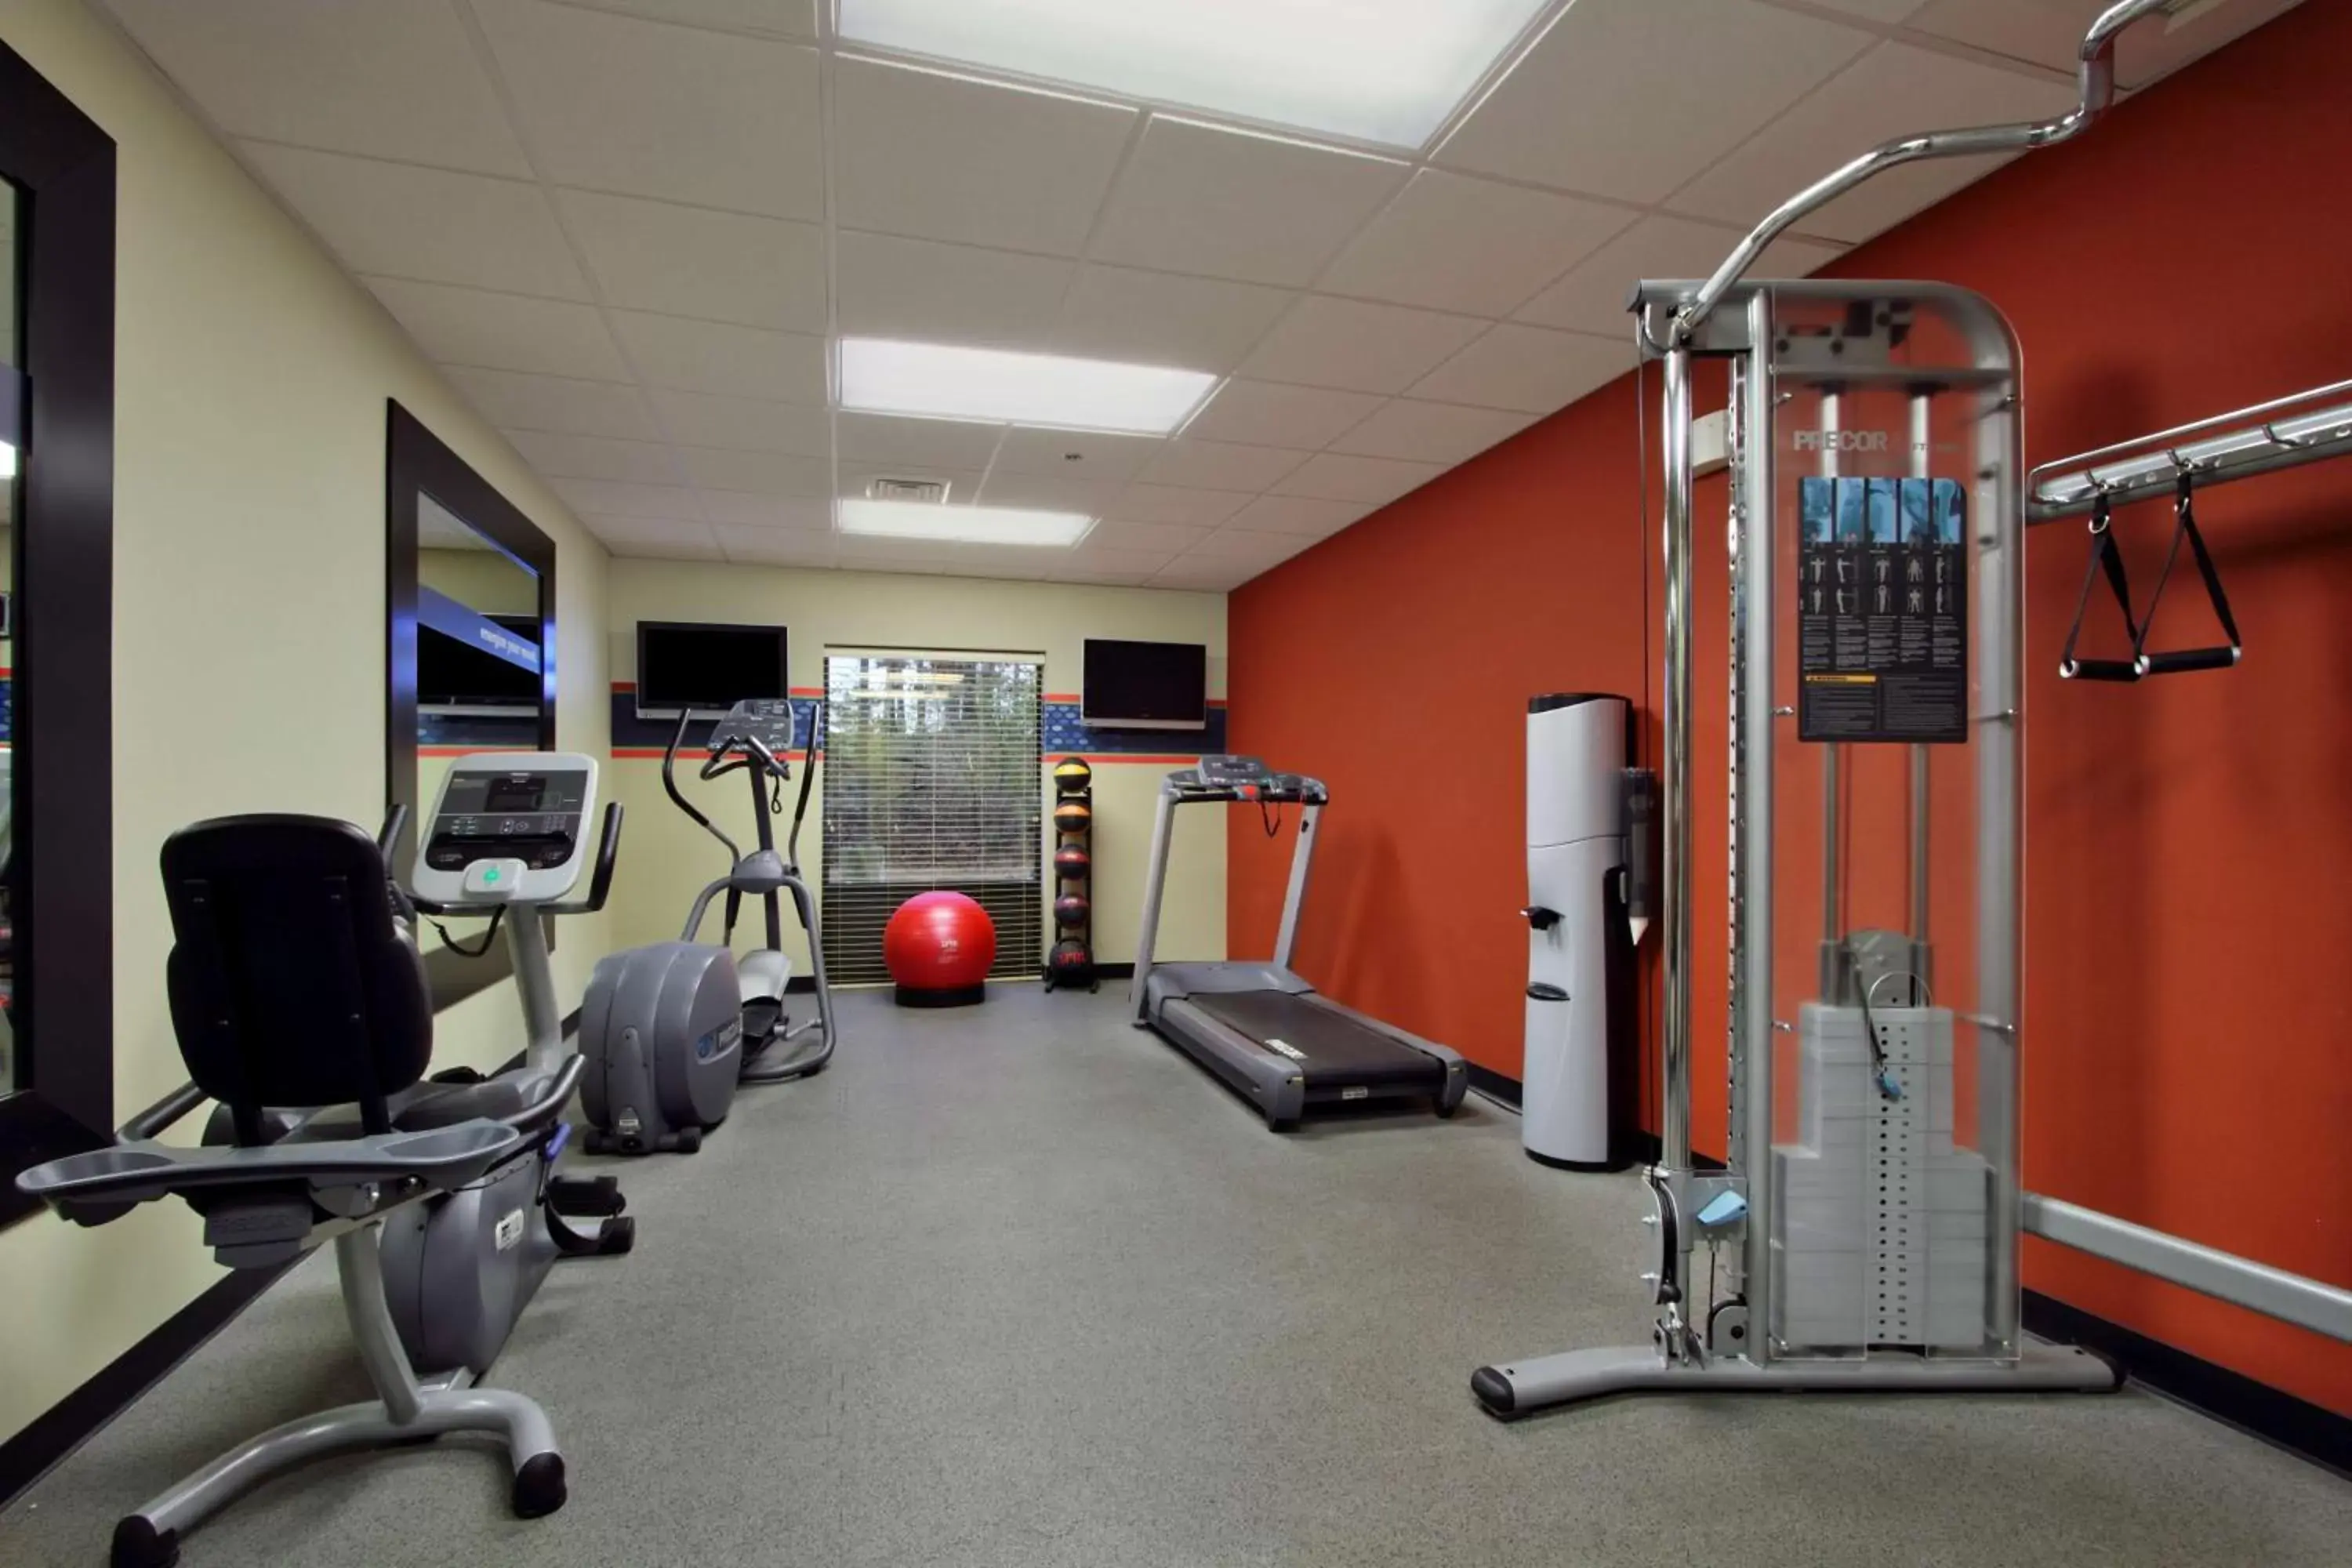 Fitness centre/facilities, Fitness Center/Facilities in Hampton Inn Jasper